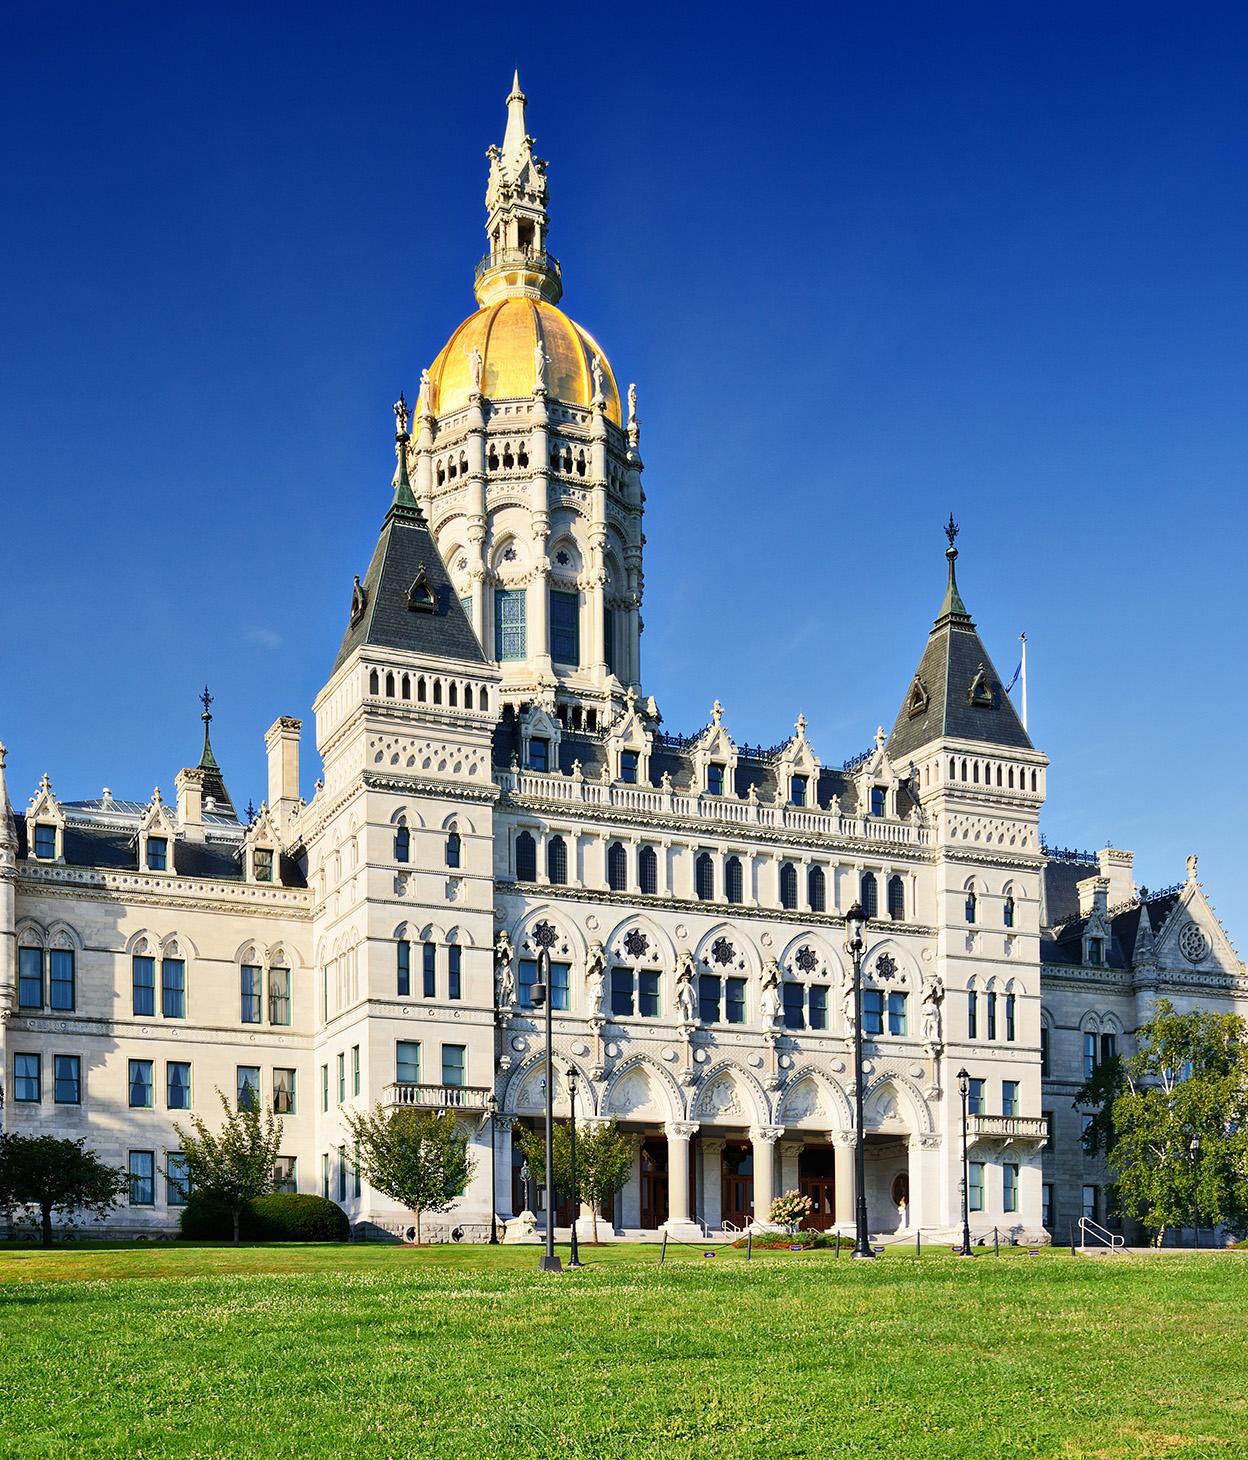 Photo du capitole de l’État du Connecticut à Hartford, États-Unis.